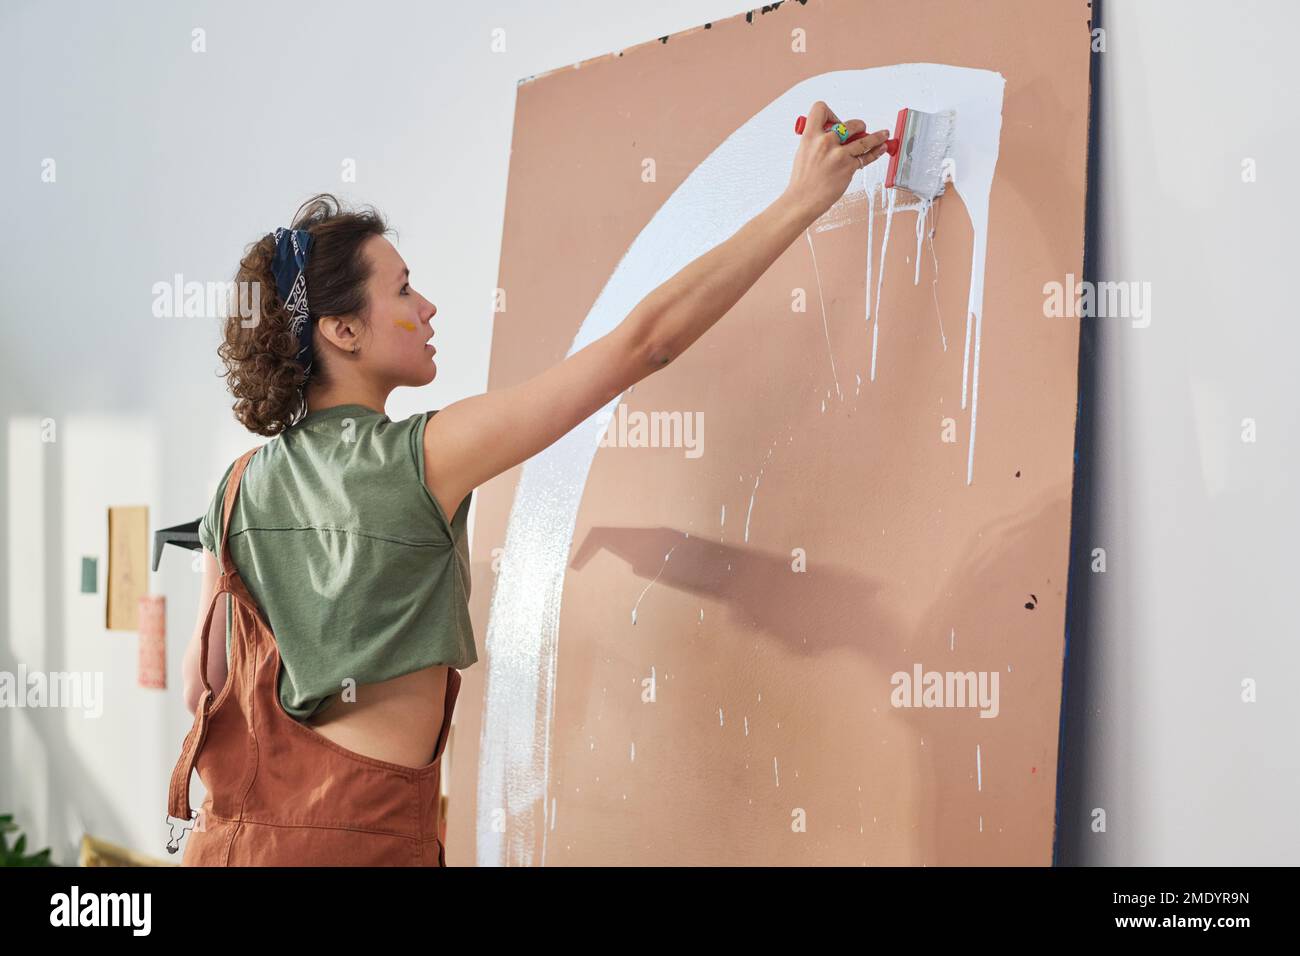 Eine junge, inspirierte Kunsthandwerkerin in Freizeitkleidung, die Pinsel und weiße Farbe verwendet und neue Kunstwerke auf dem Bedienfeld vor der Kamera kreiert Stockfoto